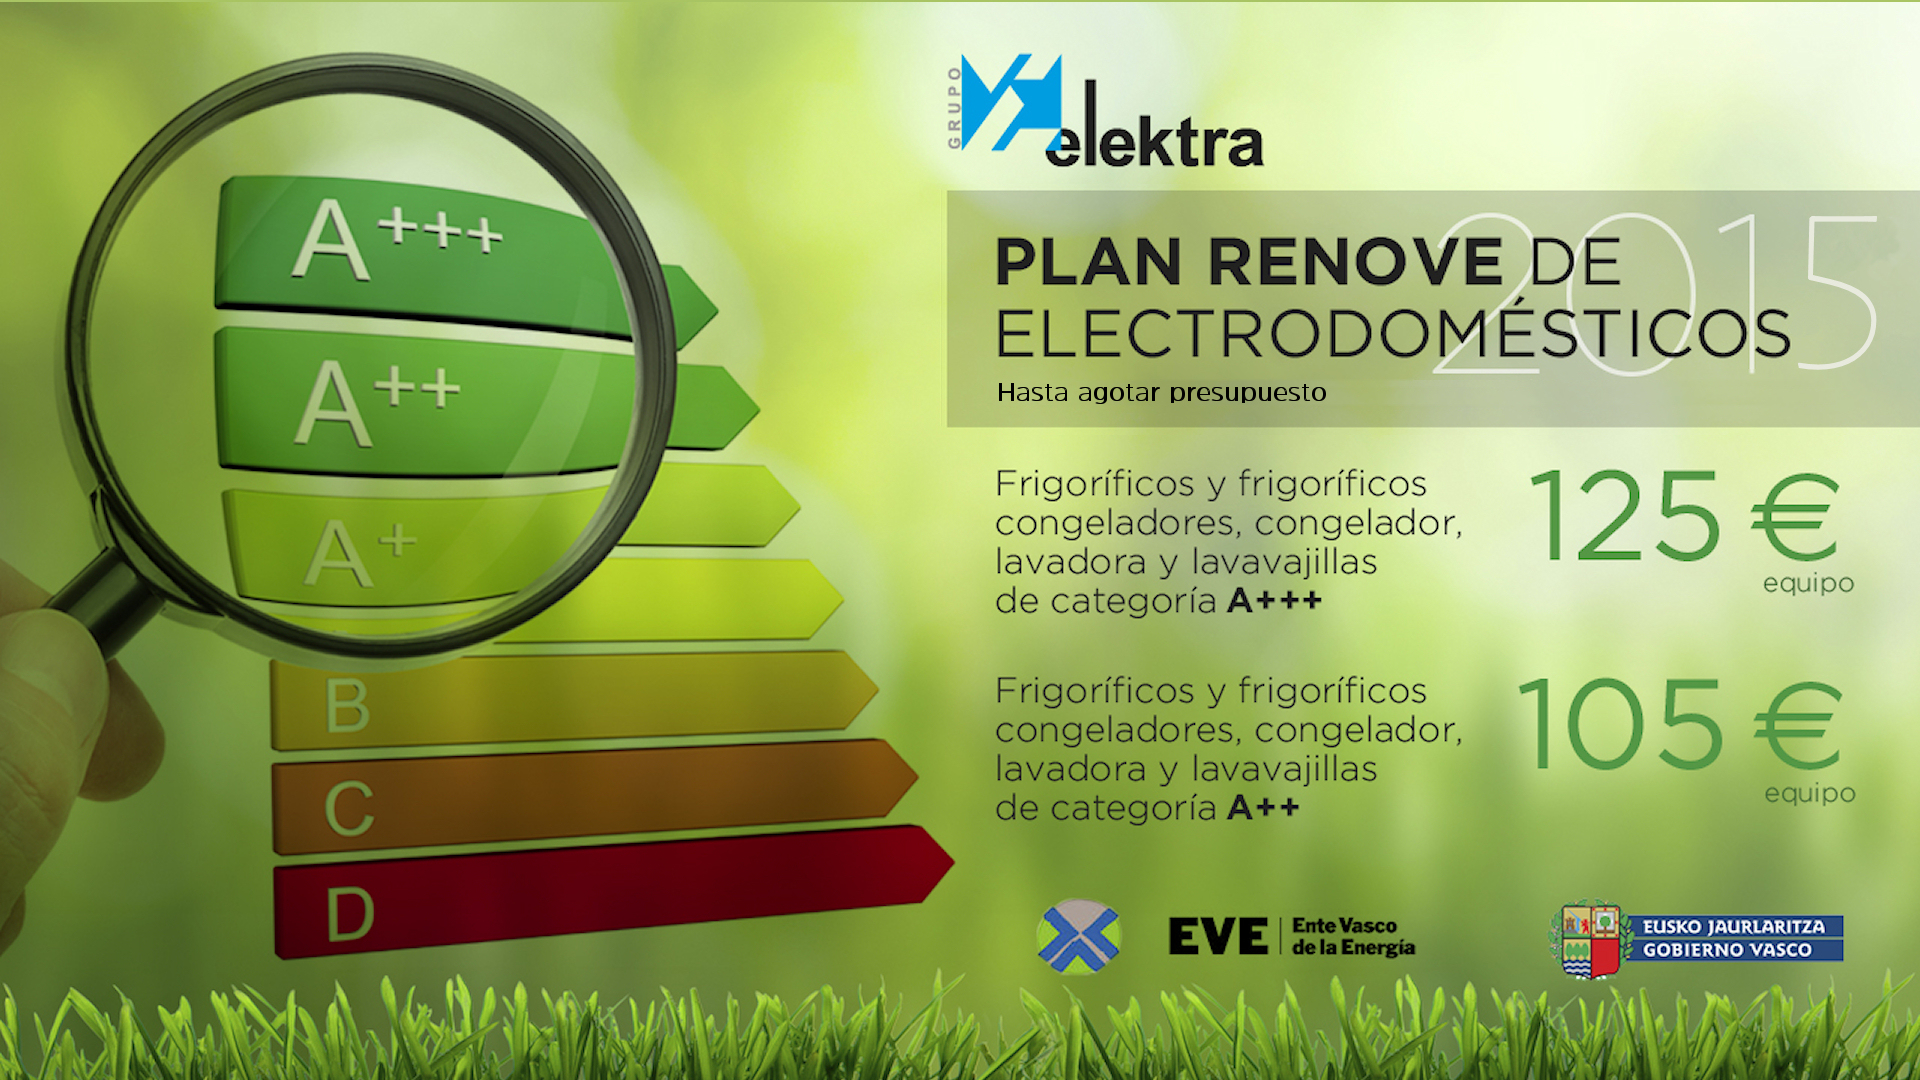 <!--:es-->Plan Renove en electrodomésticos 2015<!--:-->